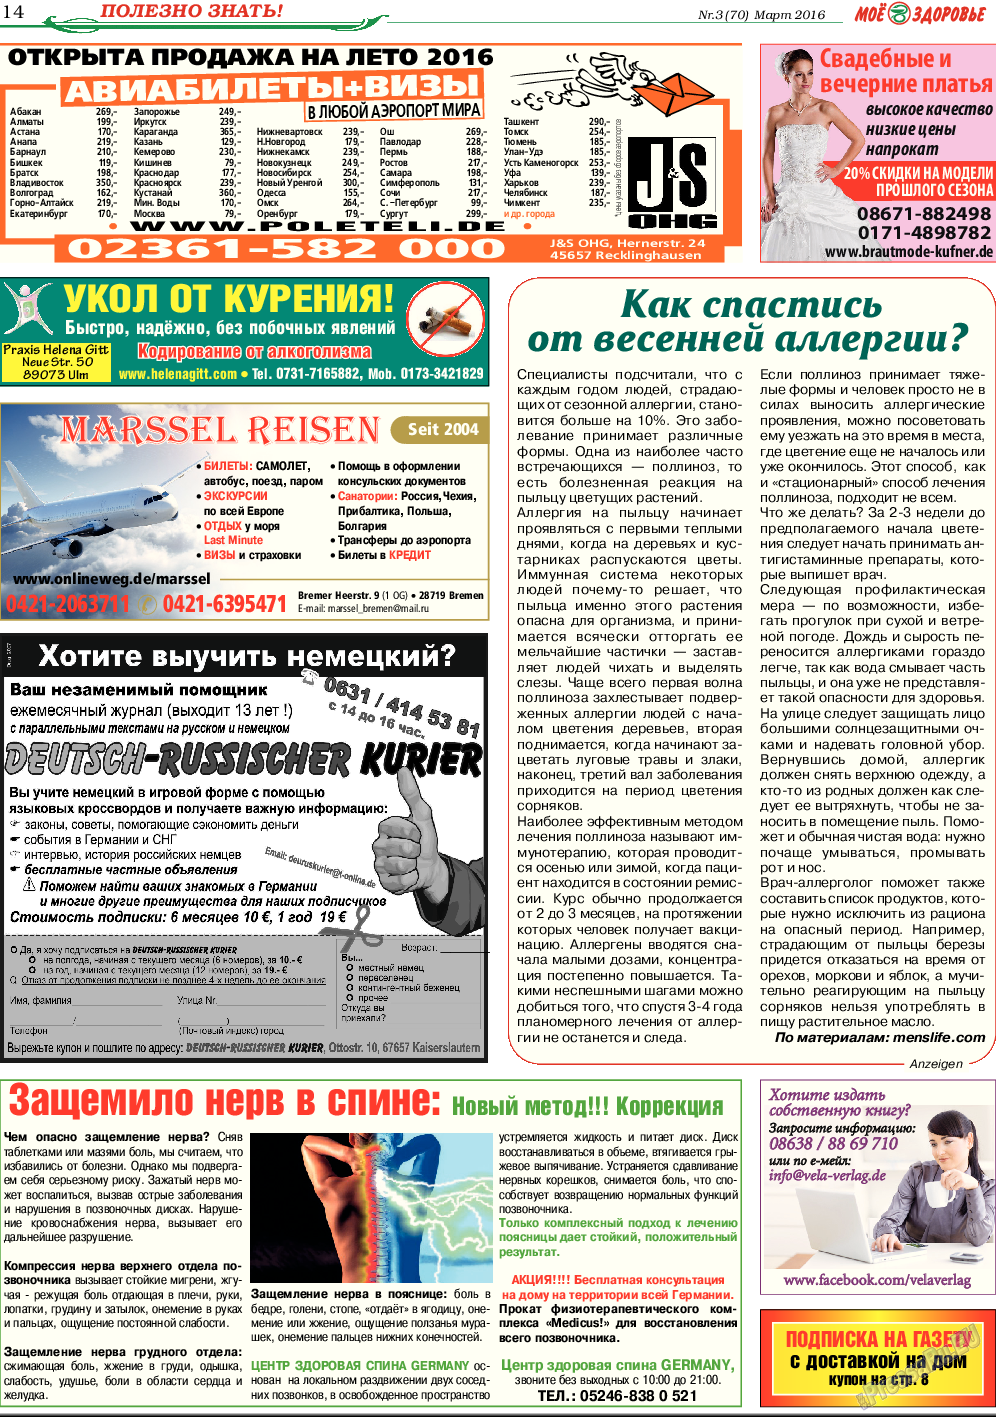 Кругозор (газета). 2016 год, номер 3, стр. 14